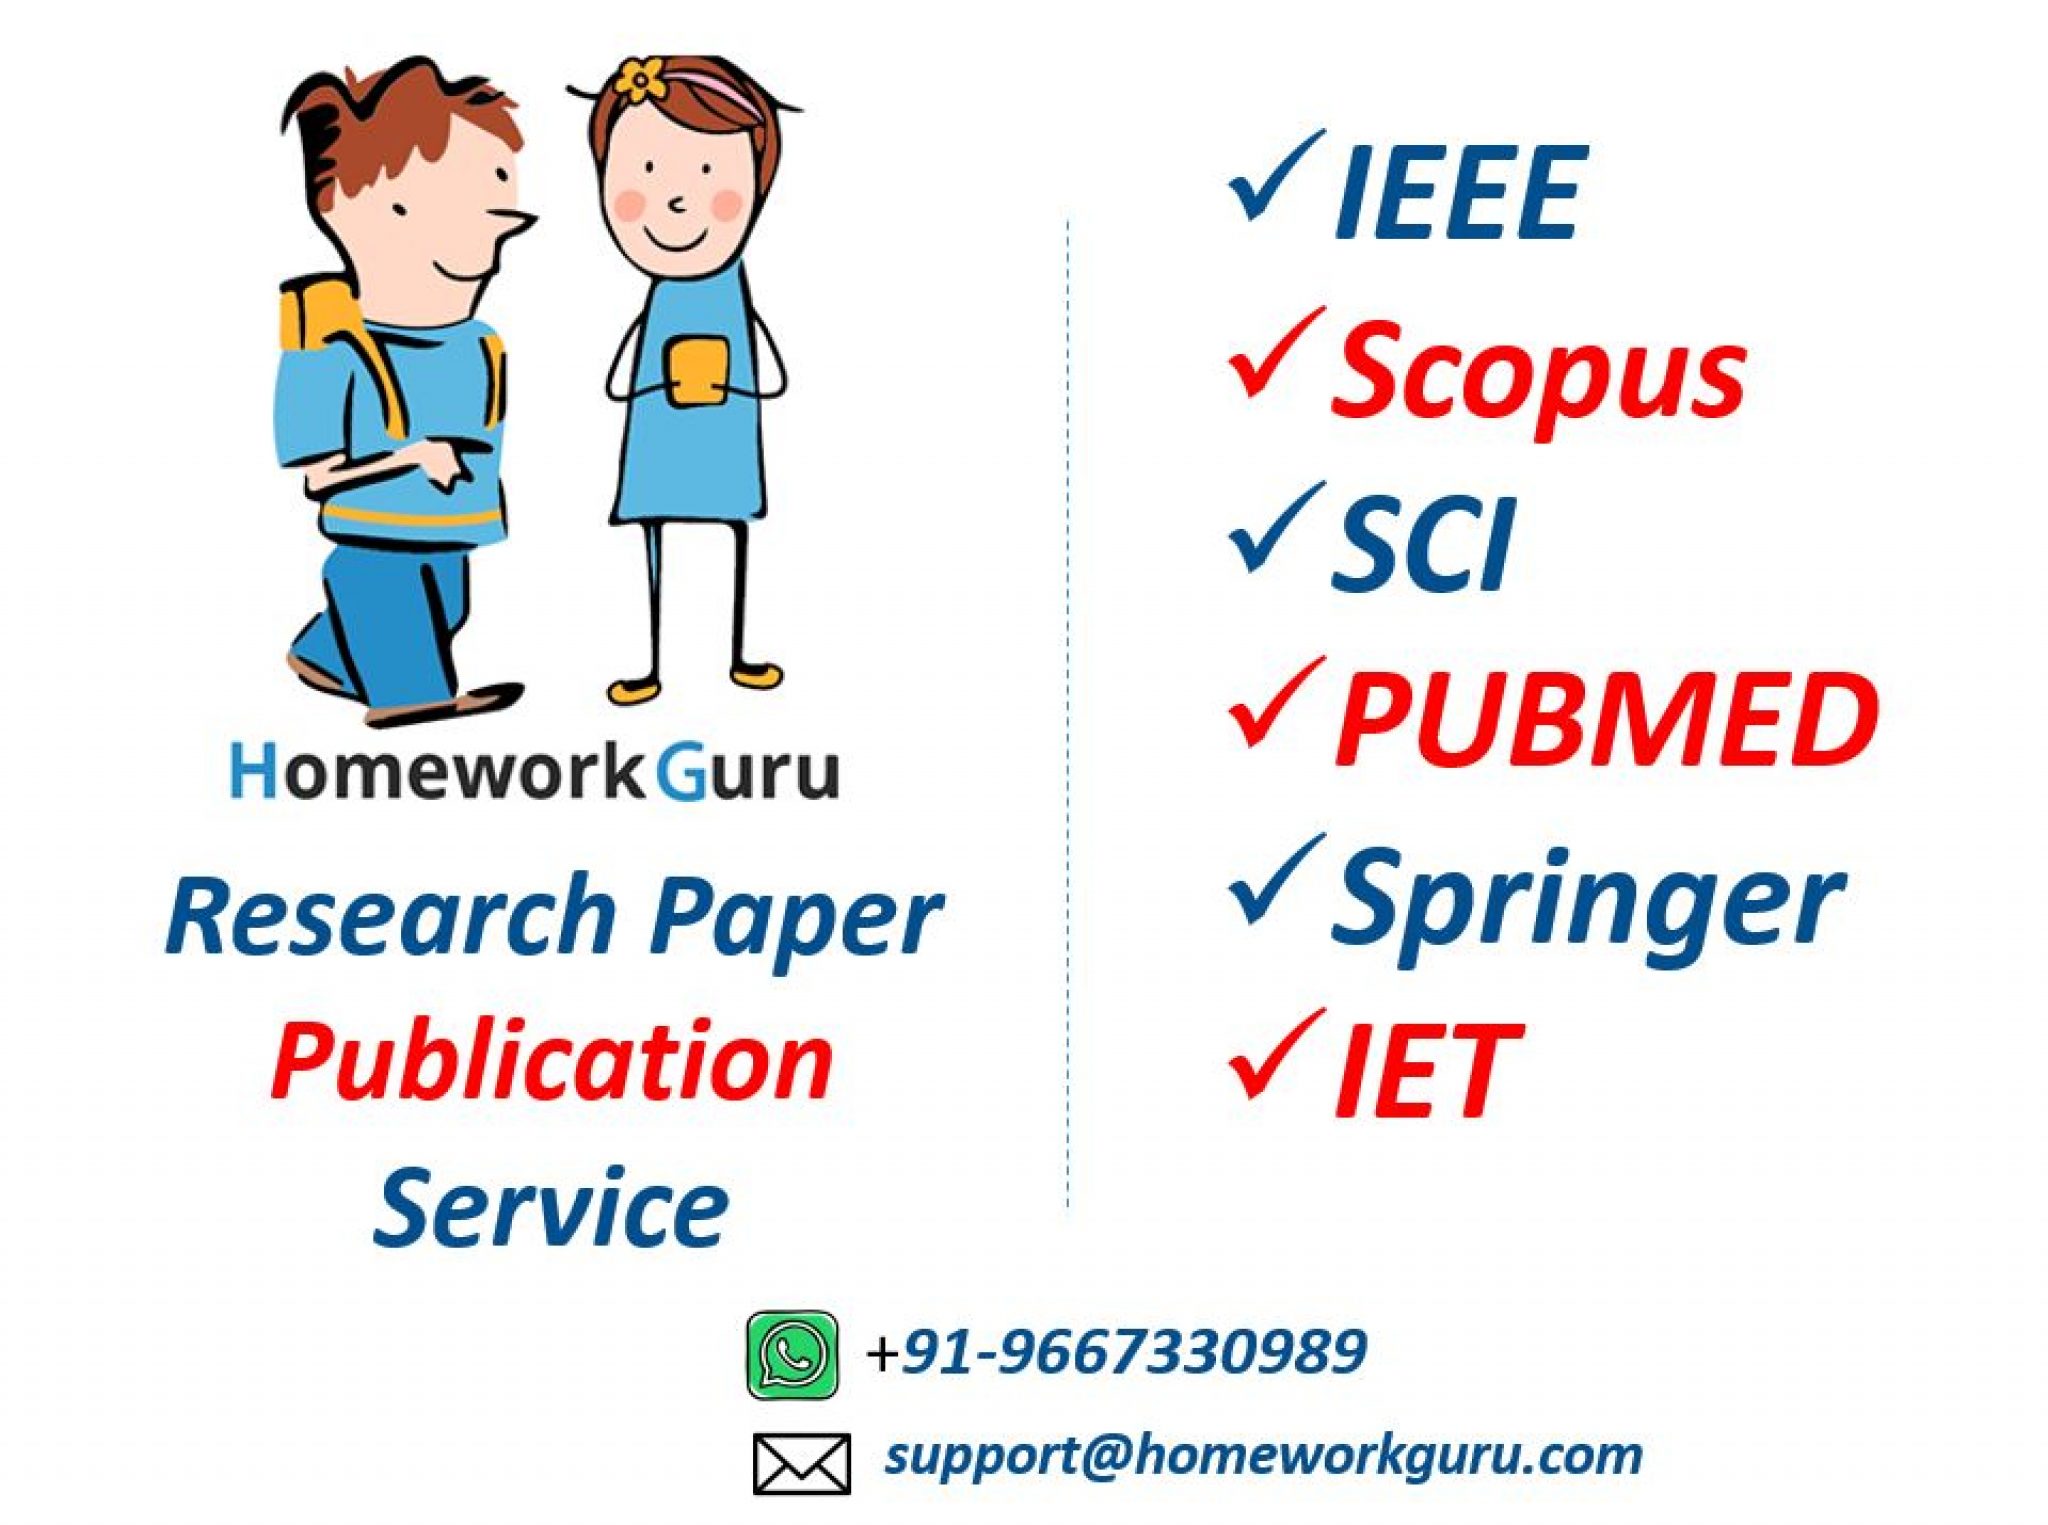 research paper publication service